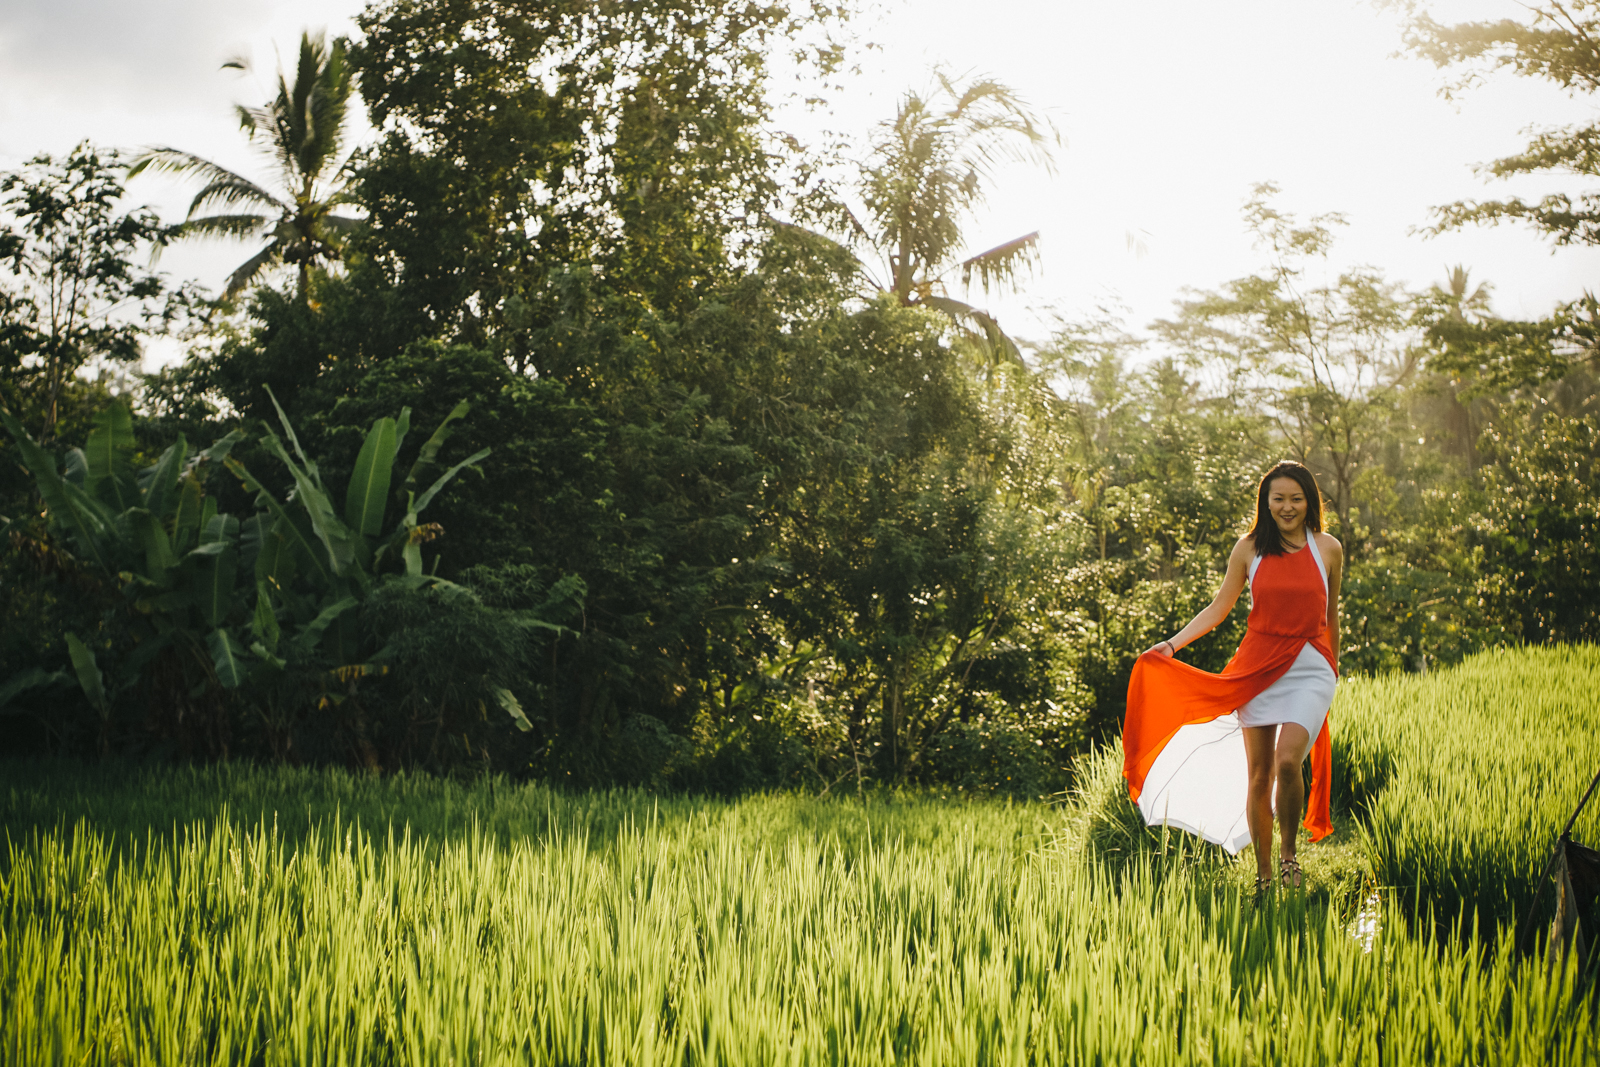 Ubud rice paddies